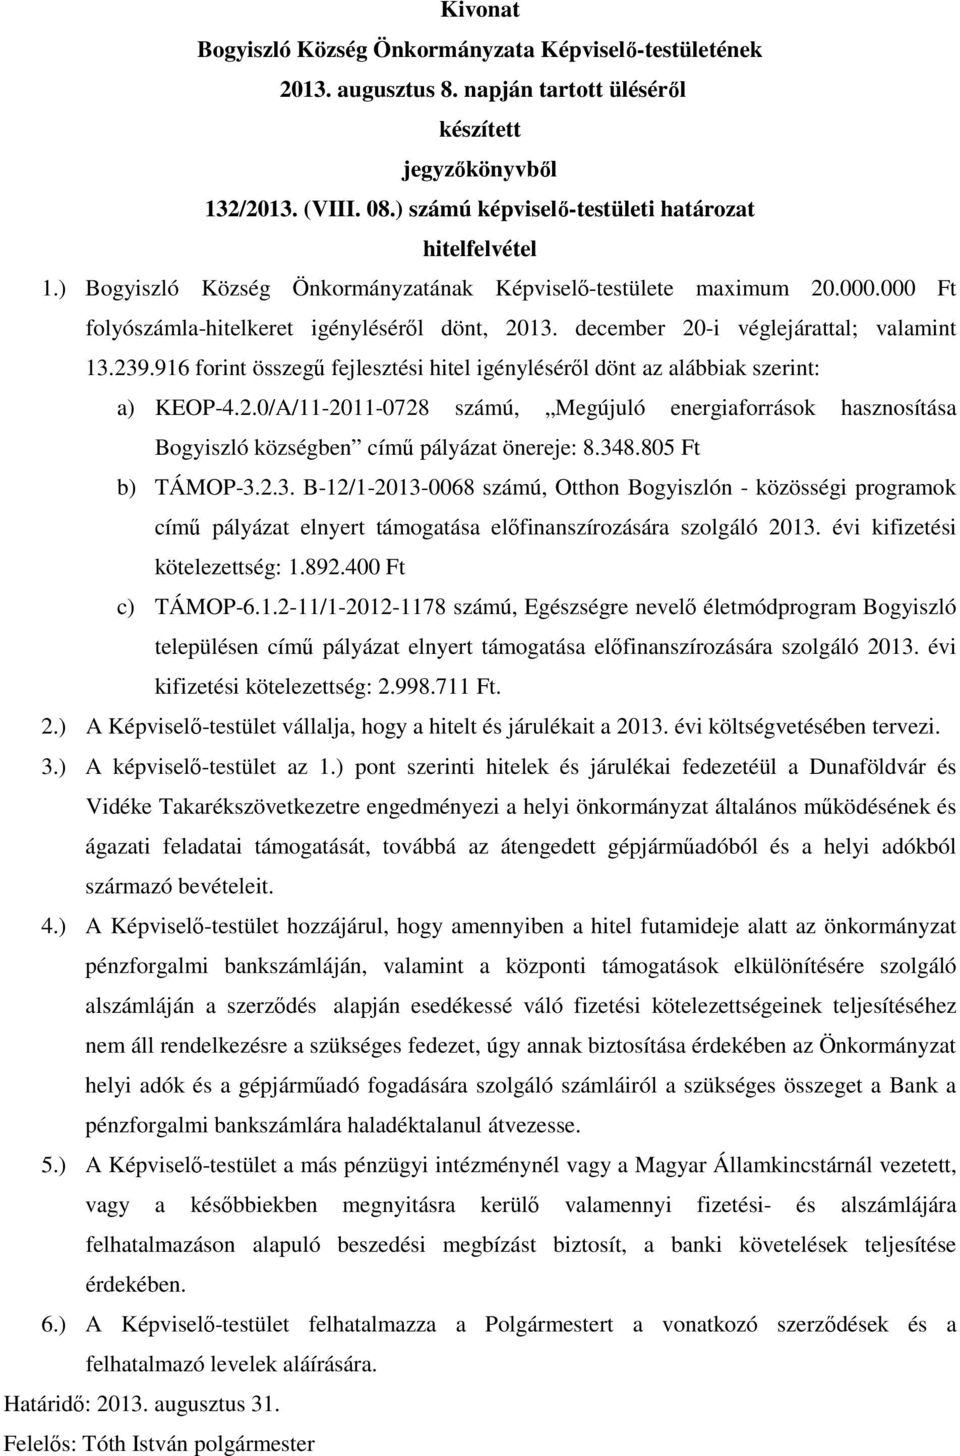 348.805 Ft b) TÁMOP-3.2.3. B-12/1-2013-0068 számú, Otthon Bogyiszlón - közösségi programok című pályázat elnyert támogatása előfinanszírozására szolgáló 2013. évi kifizetési kötelezettség: 1.892.